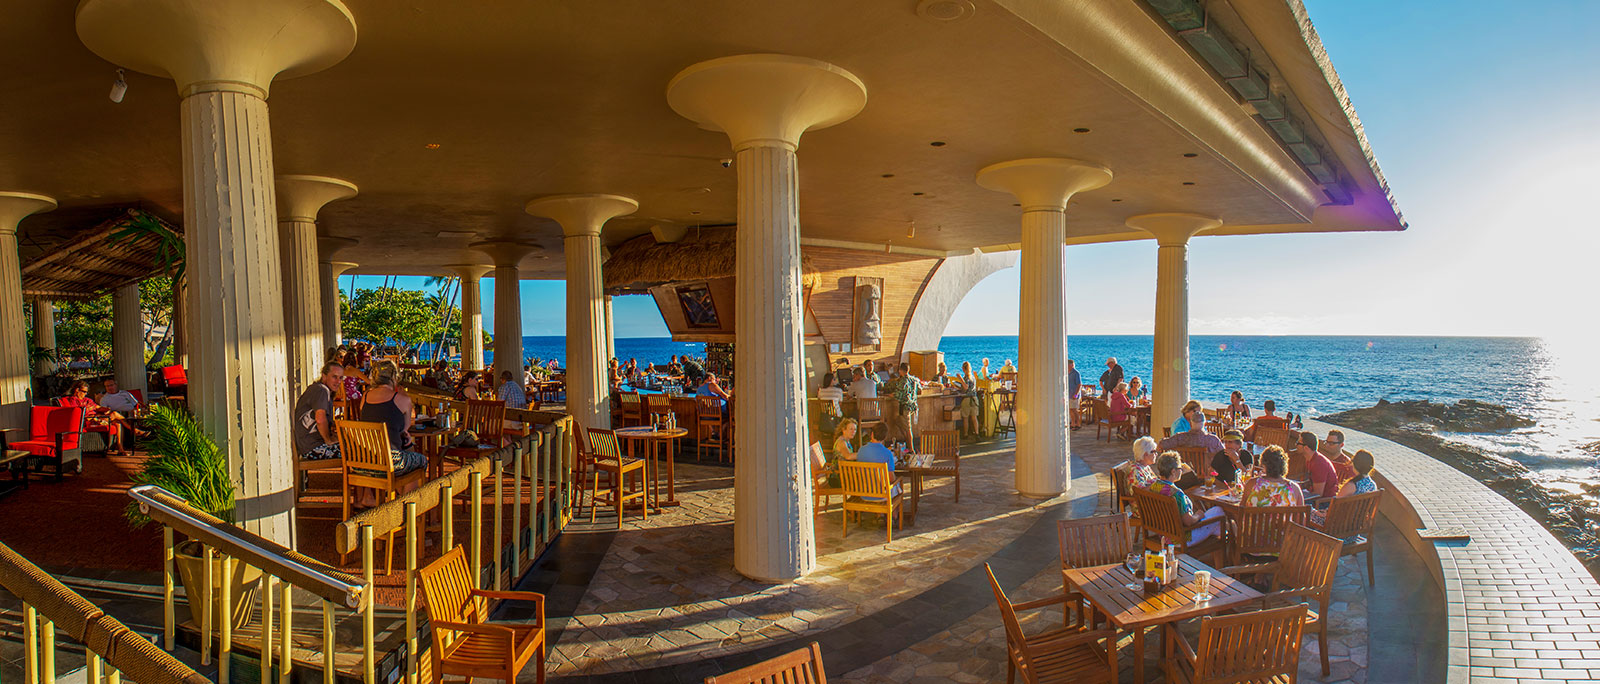 restaurant overlooking the ocean with big columns